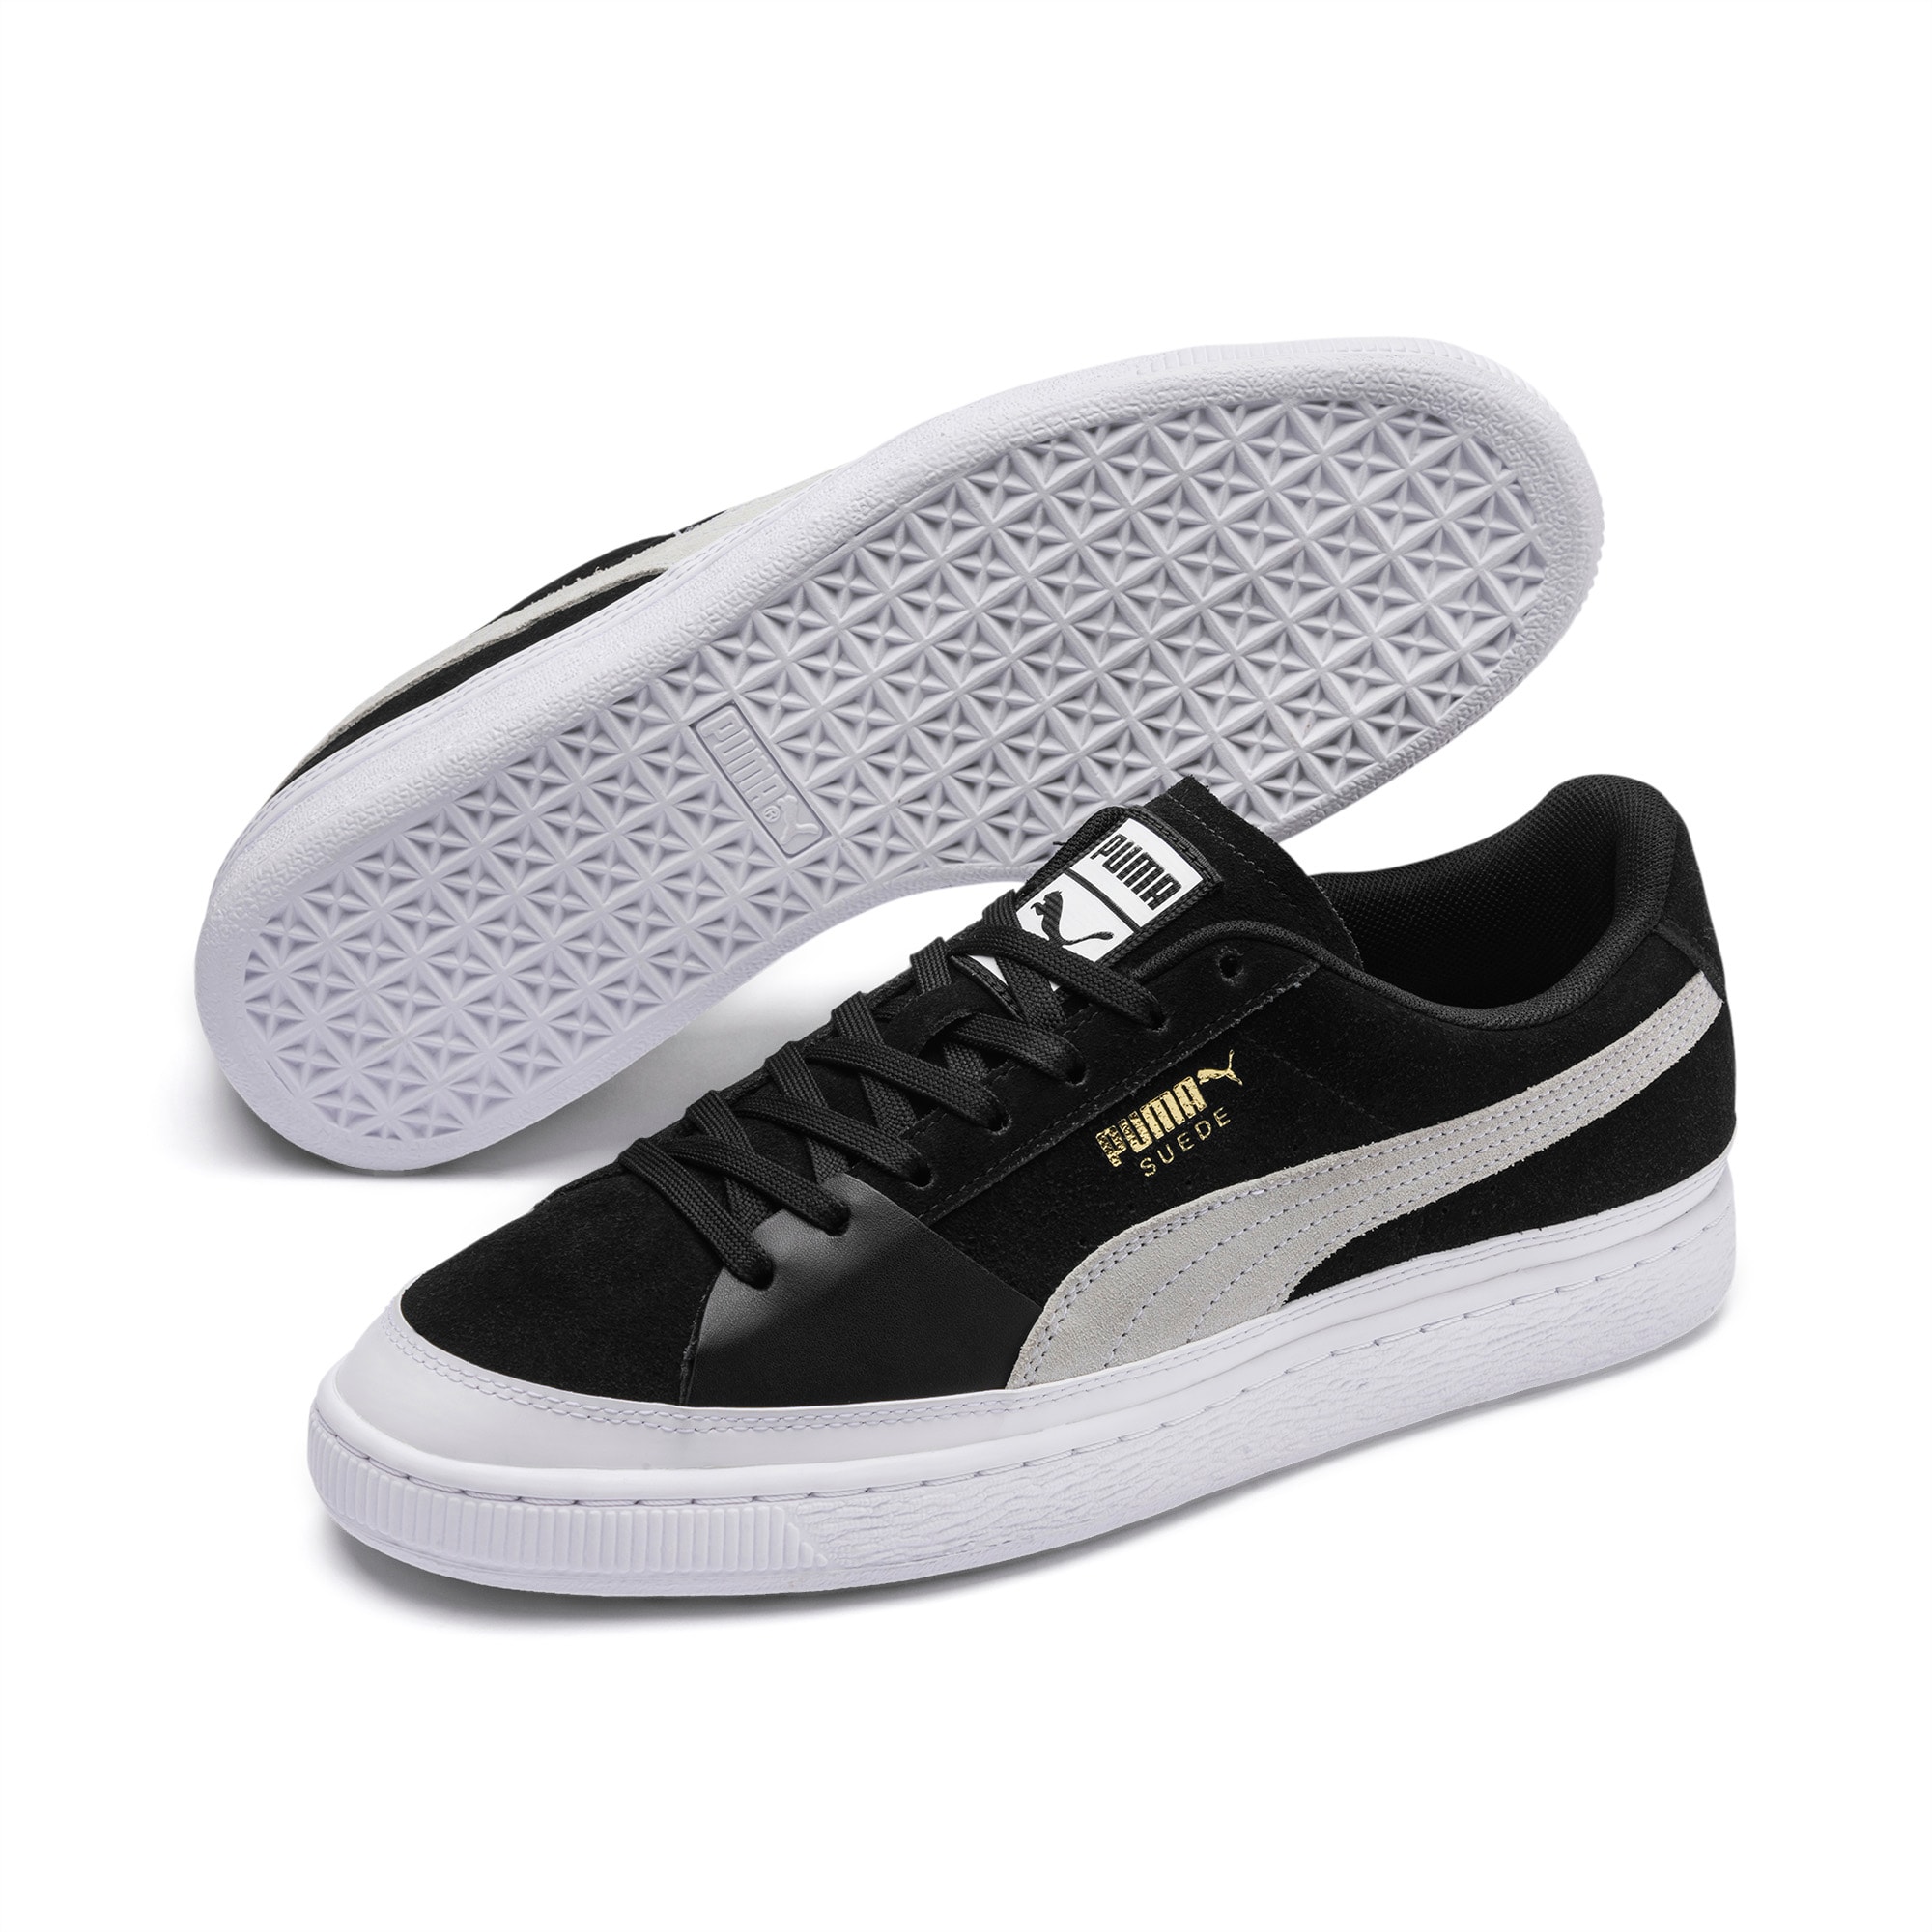 puma skateboard shoes